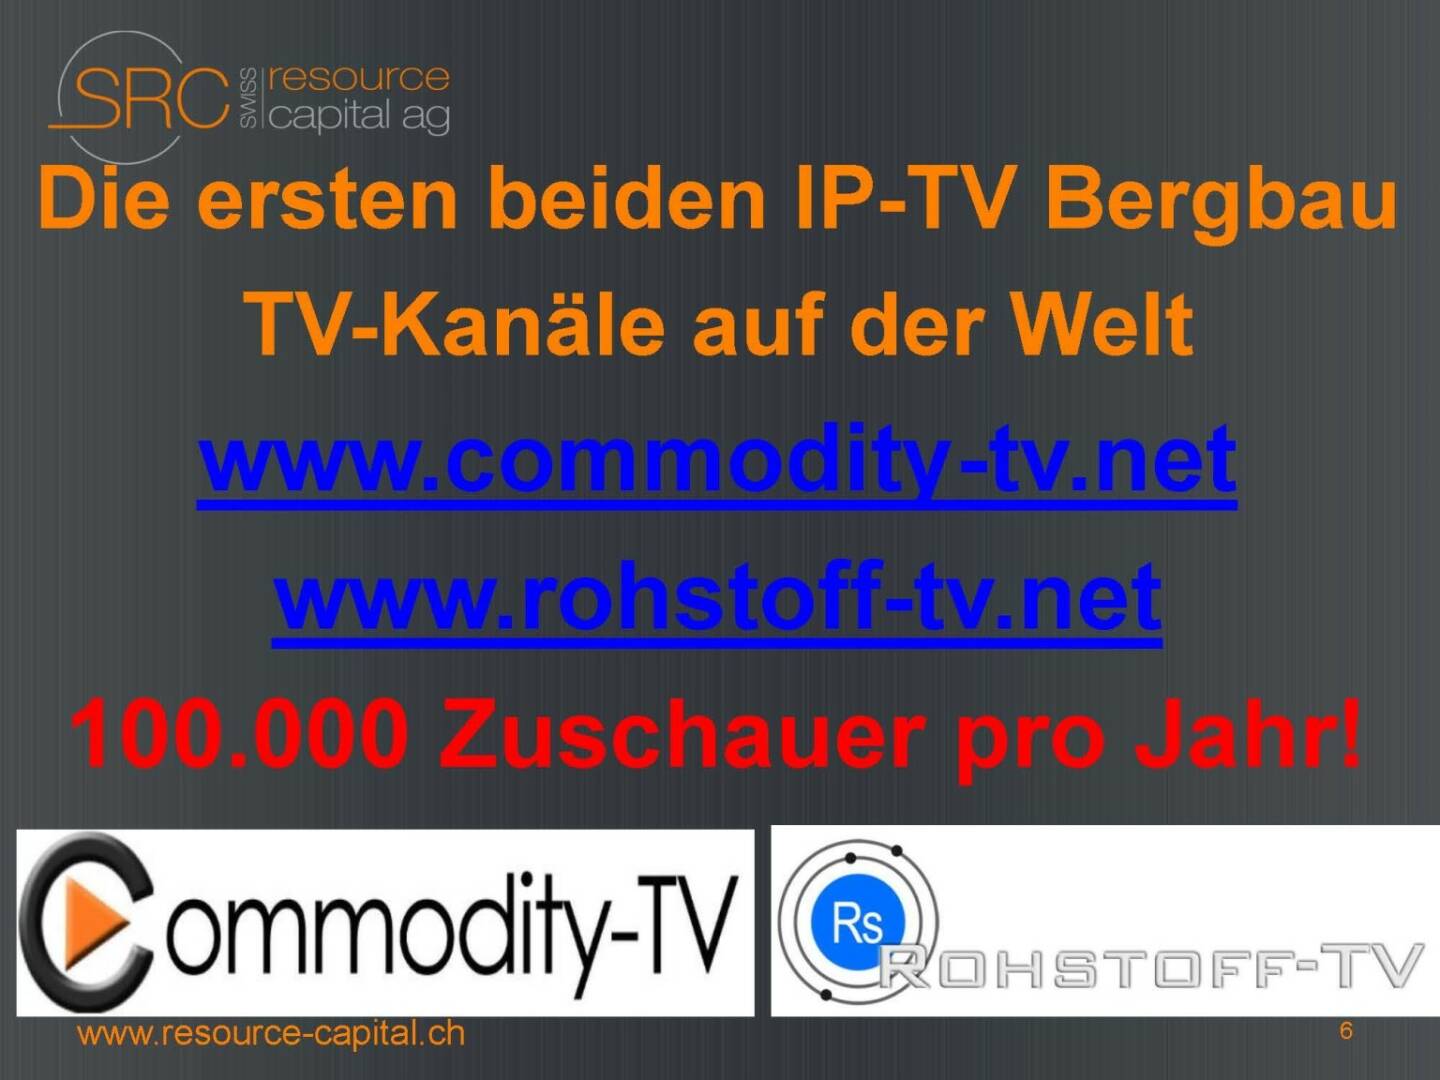 Die ersten beiden IP-TV Bergbau TV-Kanäle auf der Welt - Swiss Resource Capital)